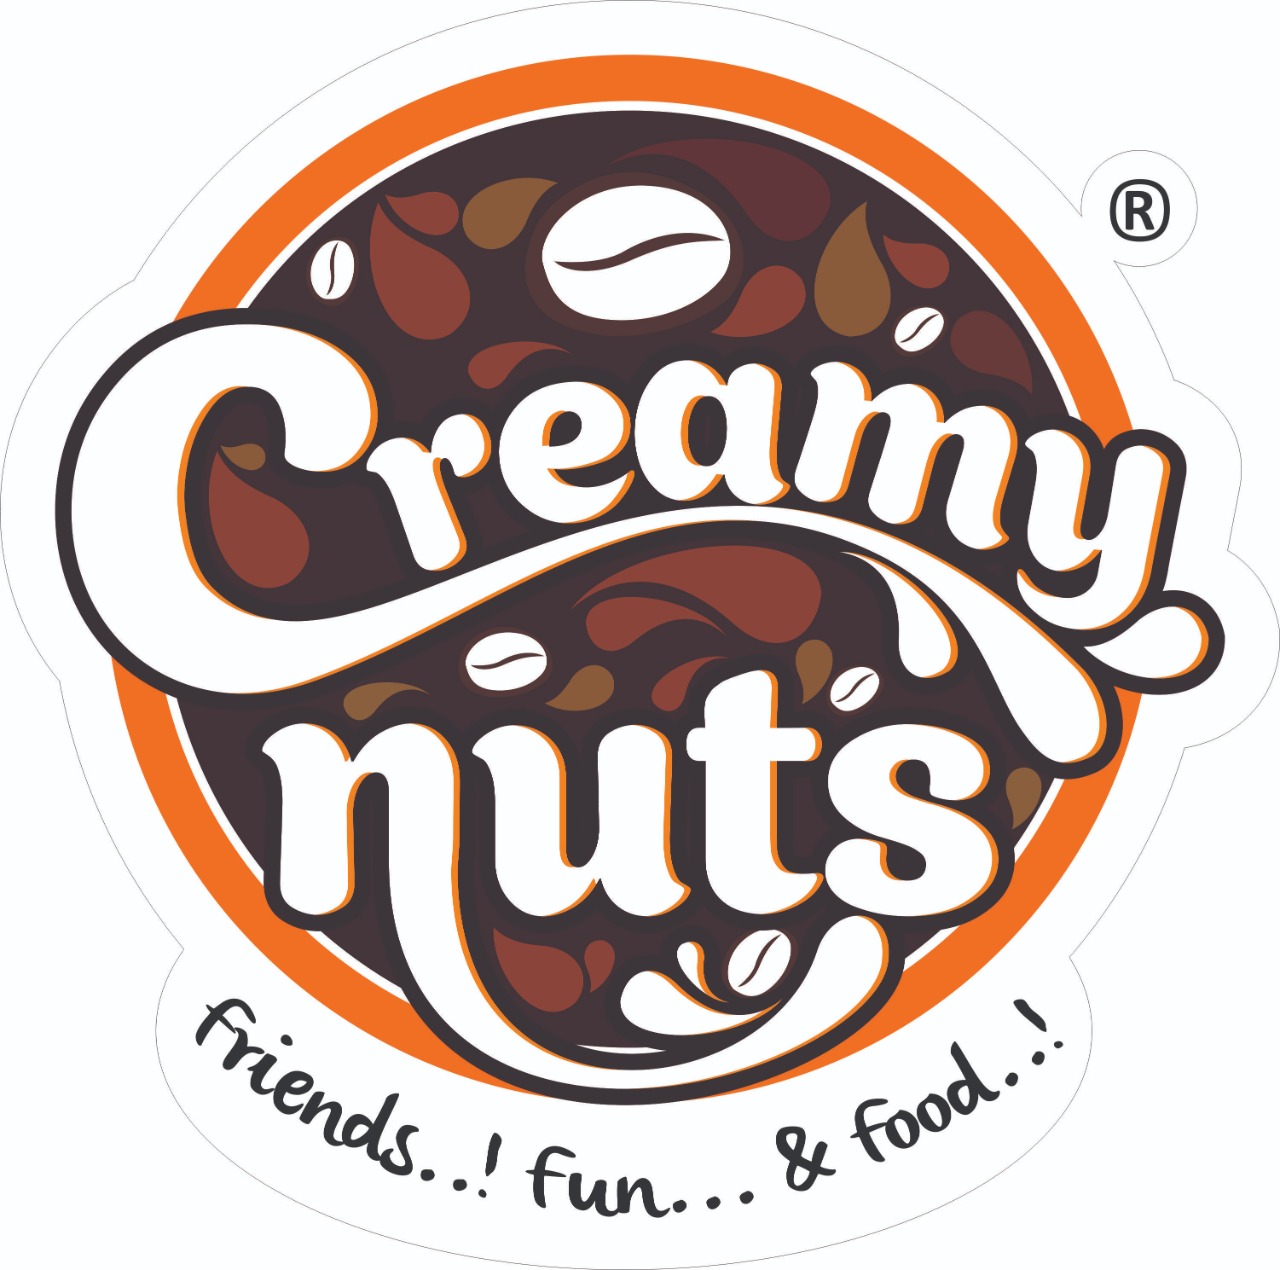 CREAMY NUTS